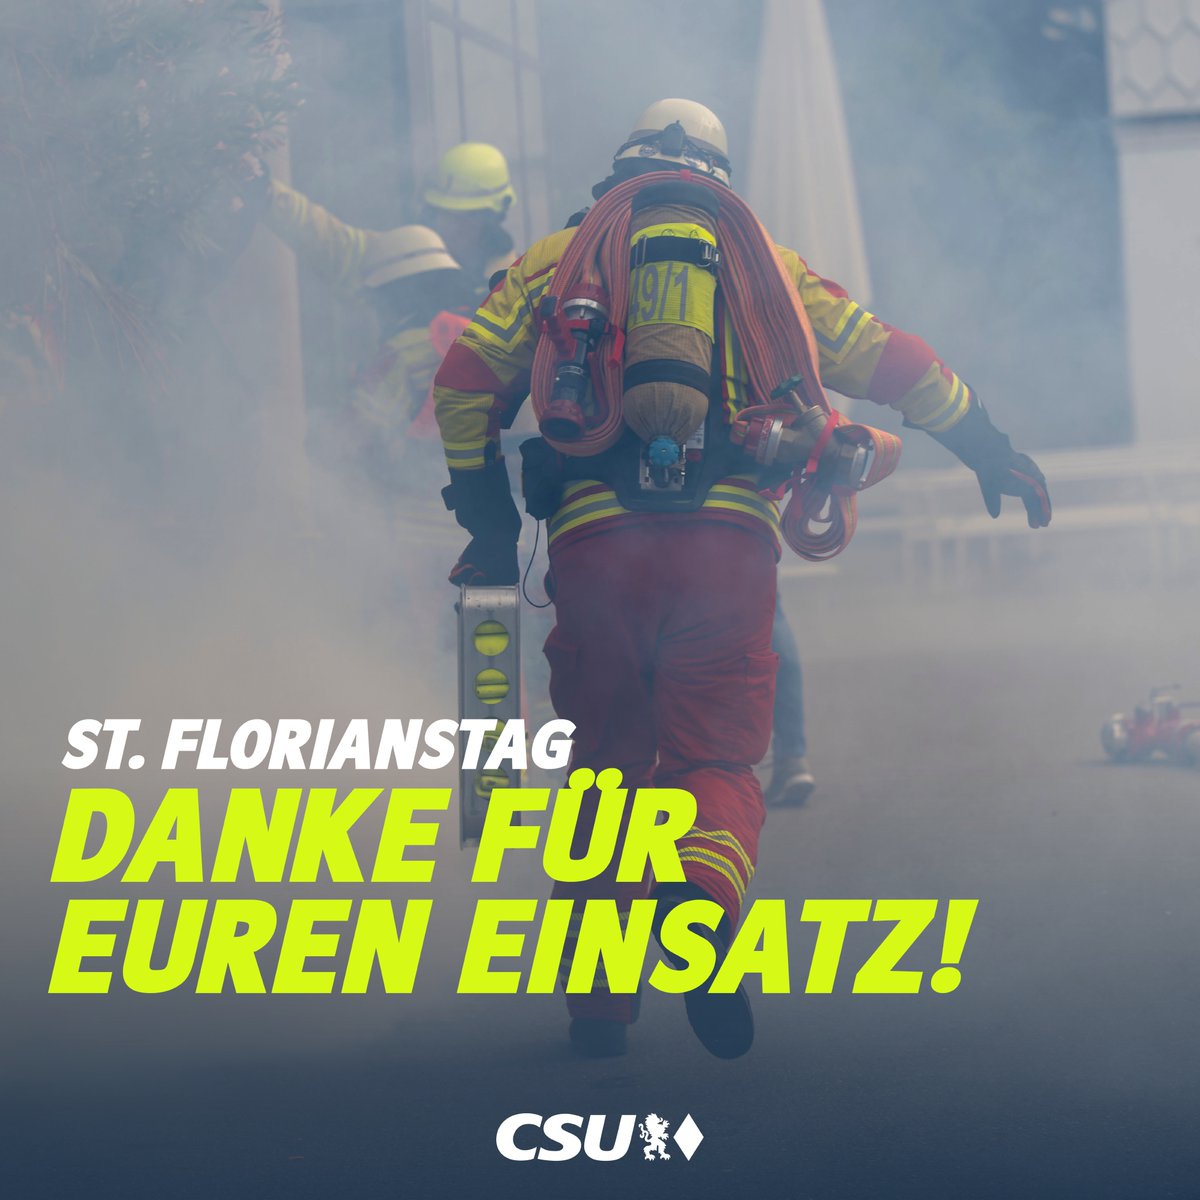 Heute ist das Fest des Hl. Florian - Schutzpatron der #Feuerwehr. Liebe Feuerwehrler: Euch gebührt #Dank, #Respekt und #Anerkennung für euren Einsatz. Dank euch ist unser #Leben sicherer!